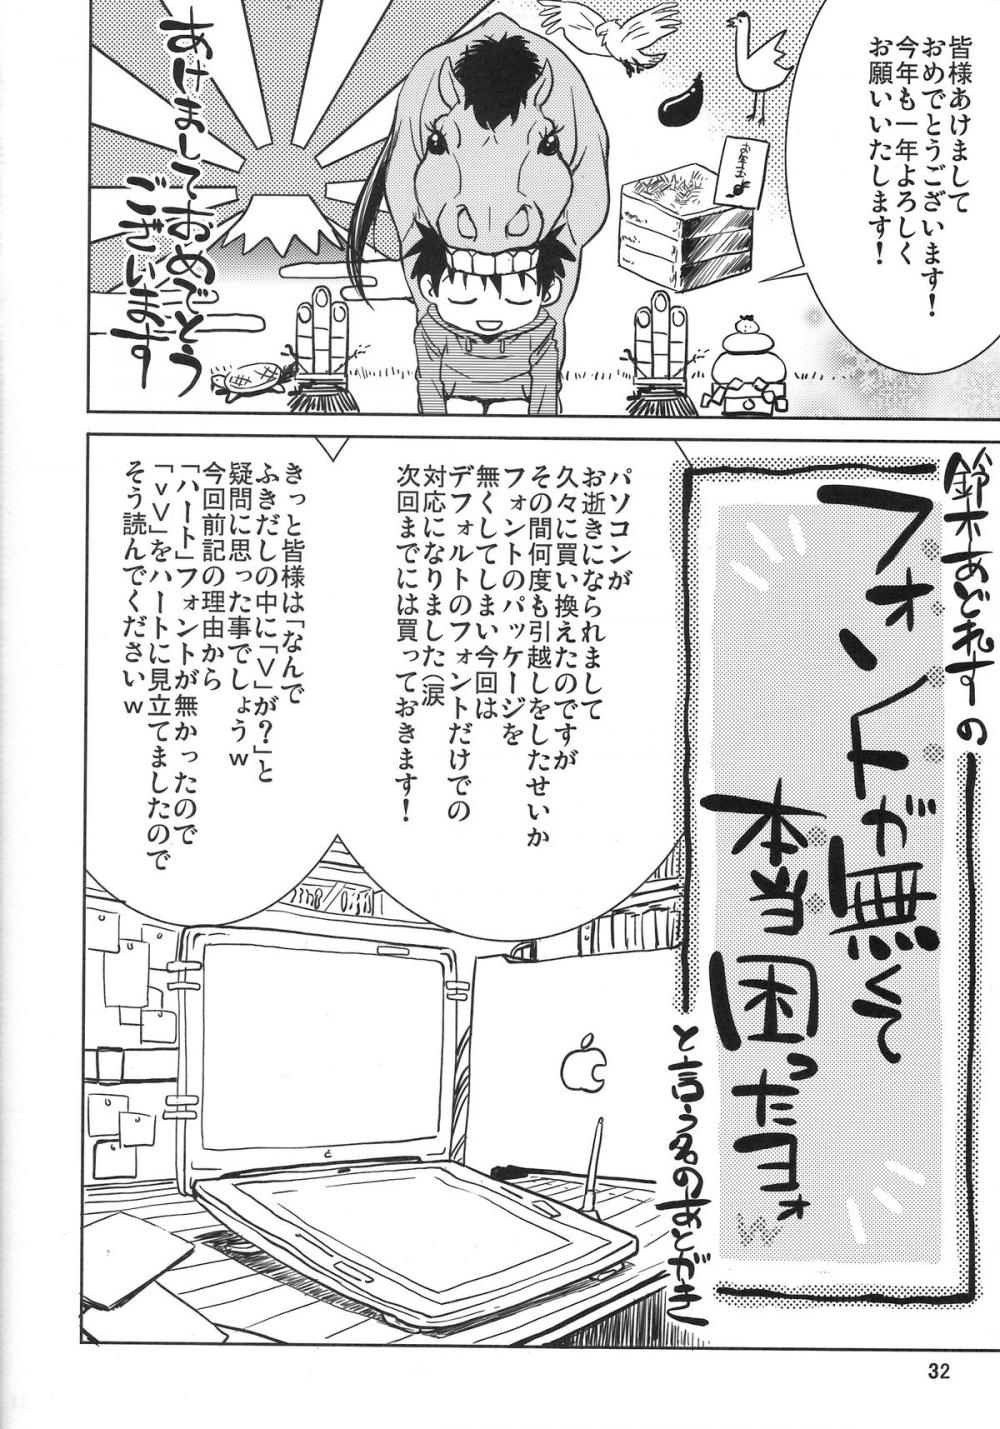 Hentai Manga Comic-IS 2-Read-29